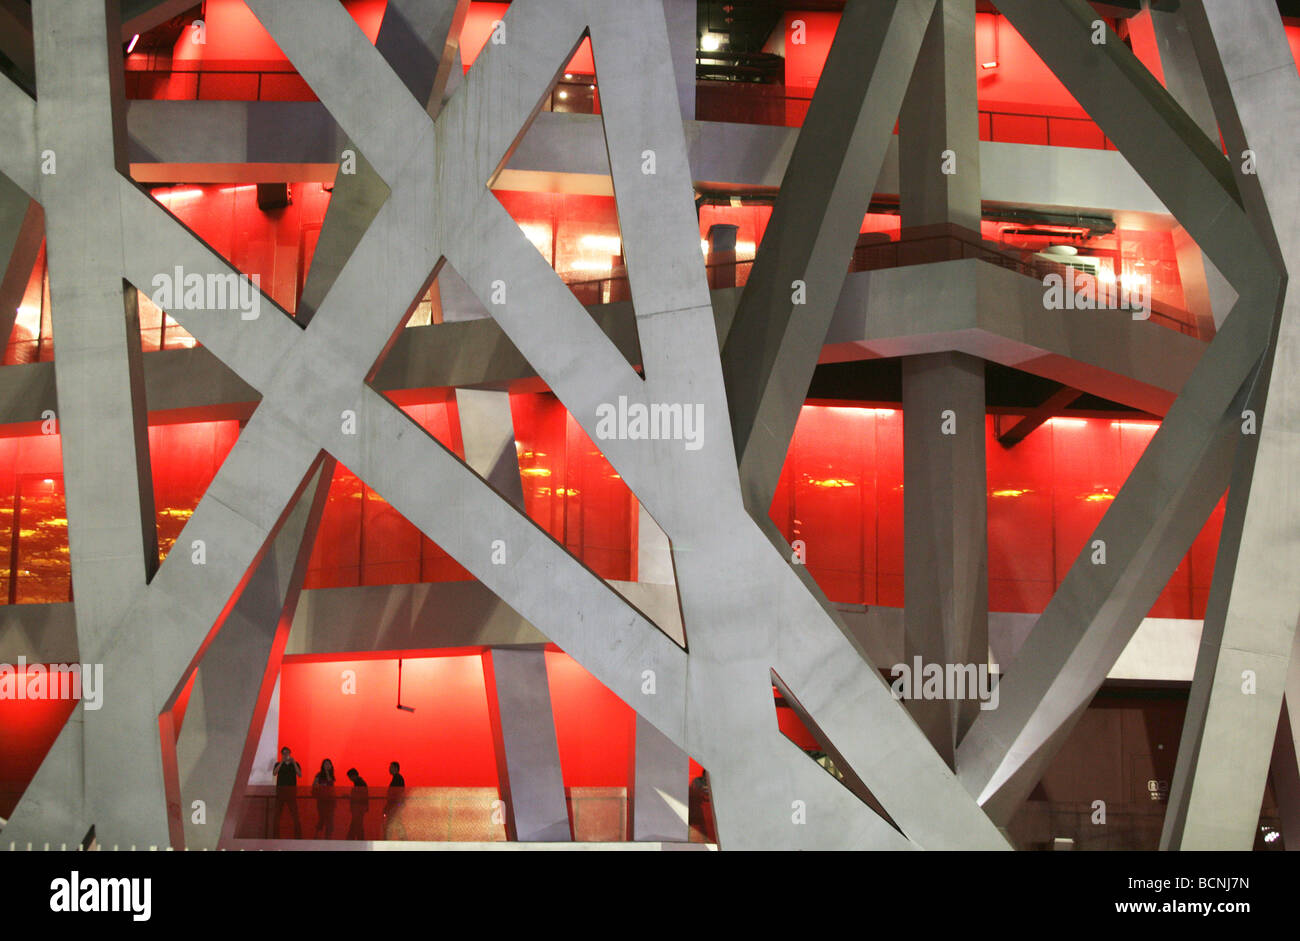 Massicce travi in acciaio e illuminazione drammatica all'interno del Bird's Nest, Pechino, Cina Foto Stock